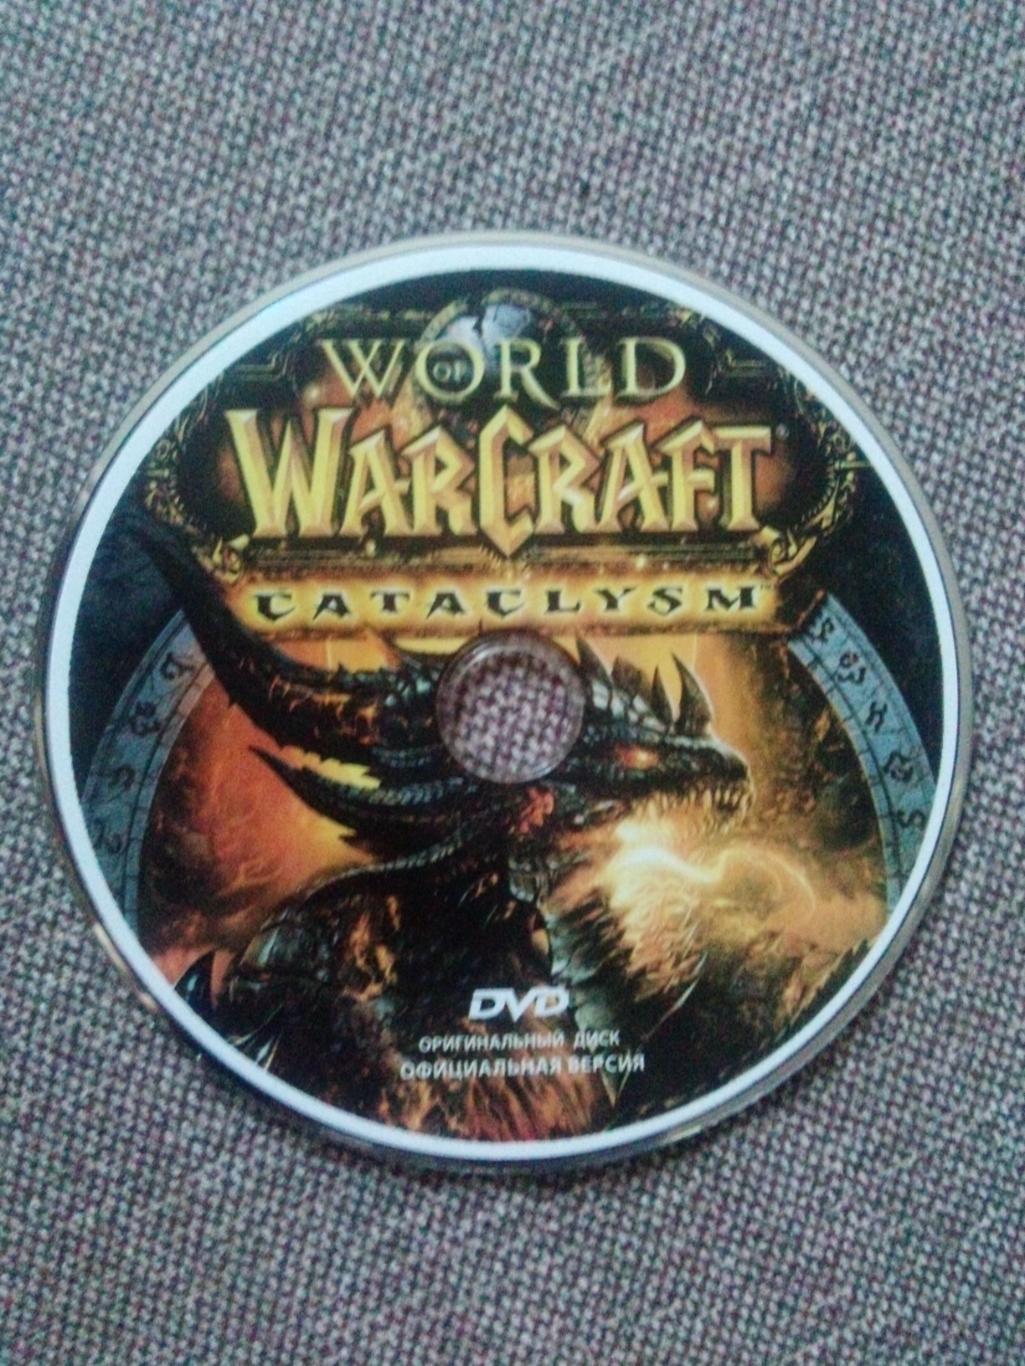 PC - DVD диск : World Warcraft - Cataclysm (игра для компьютера) лицензия 3